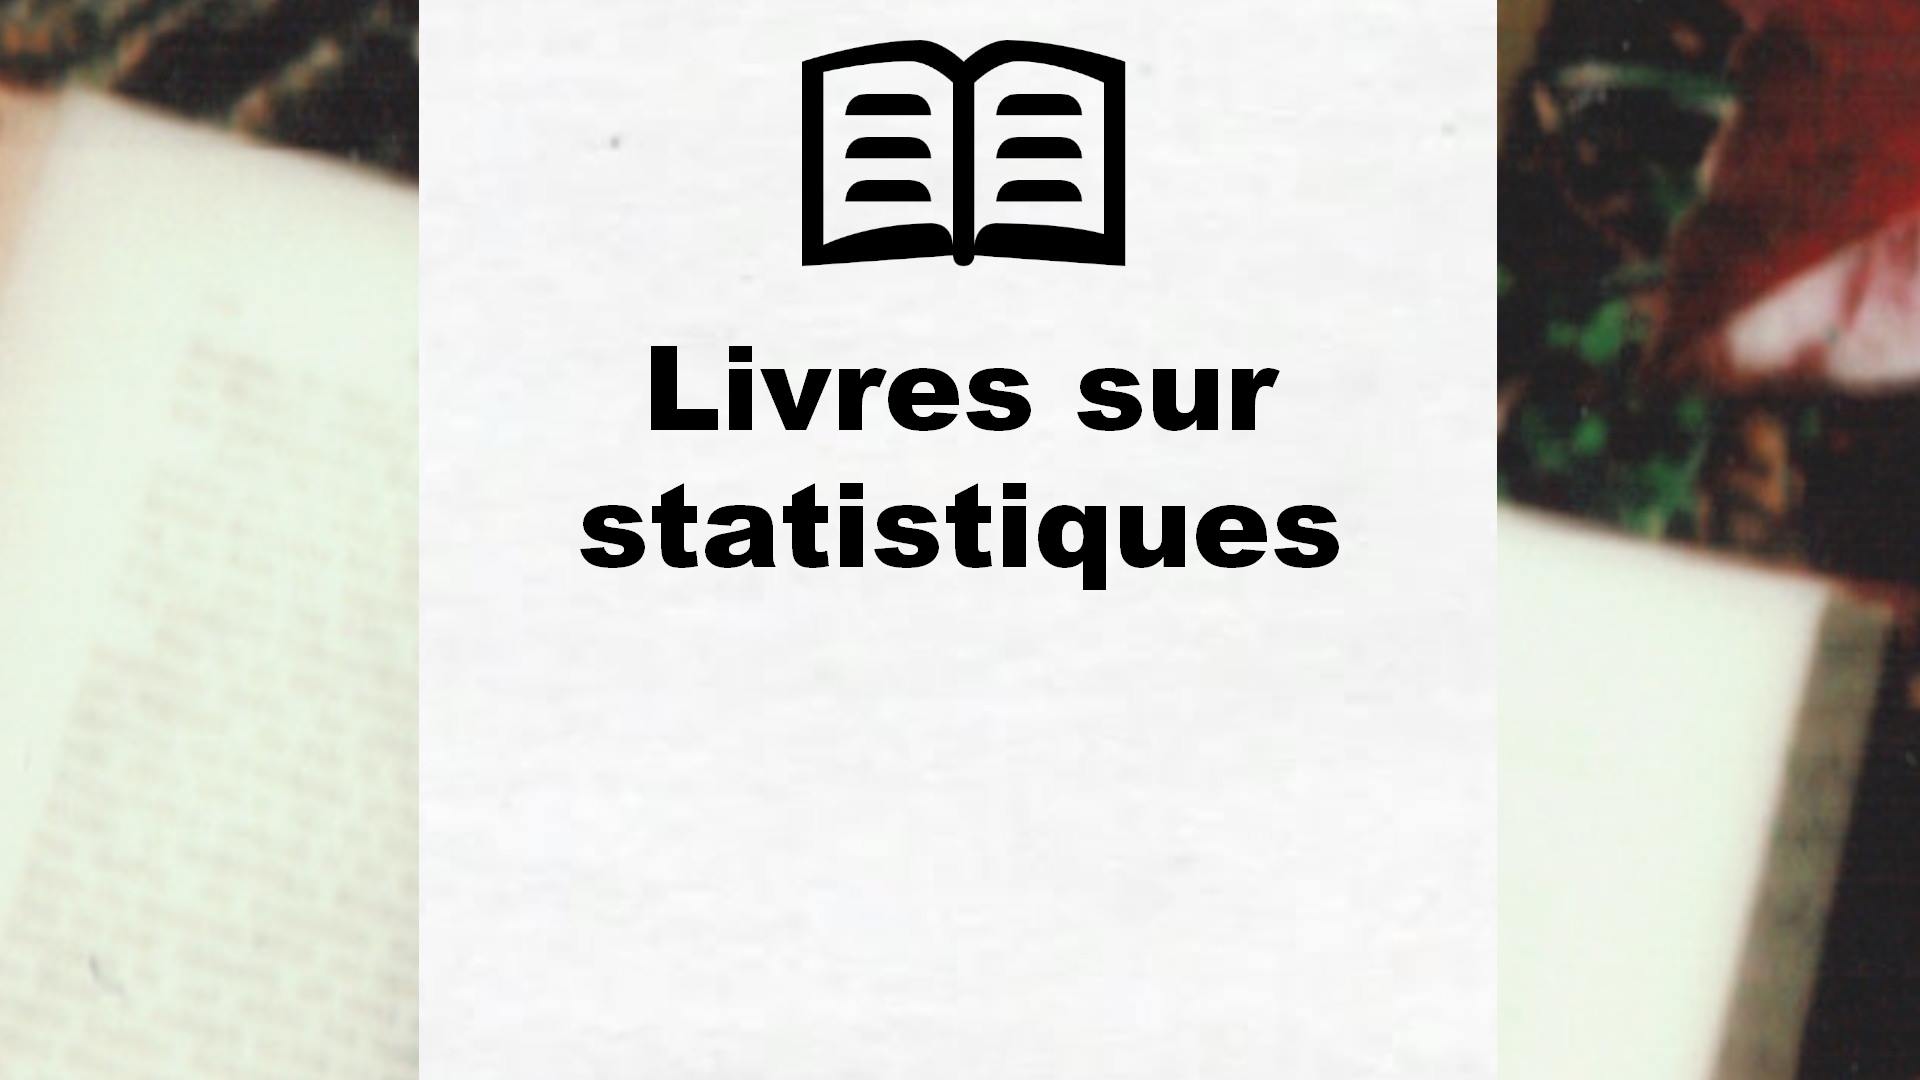 Livres sur statistiques